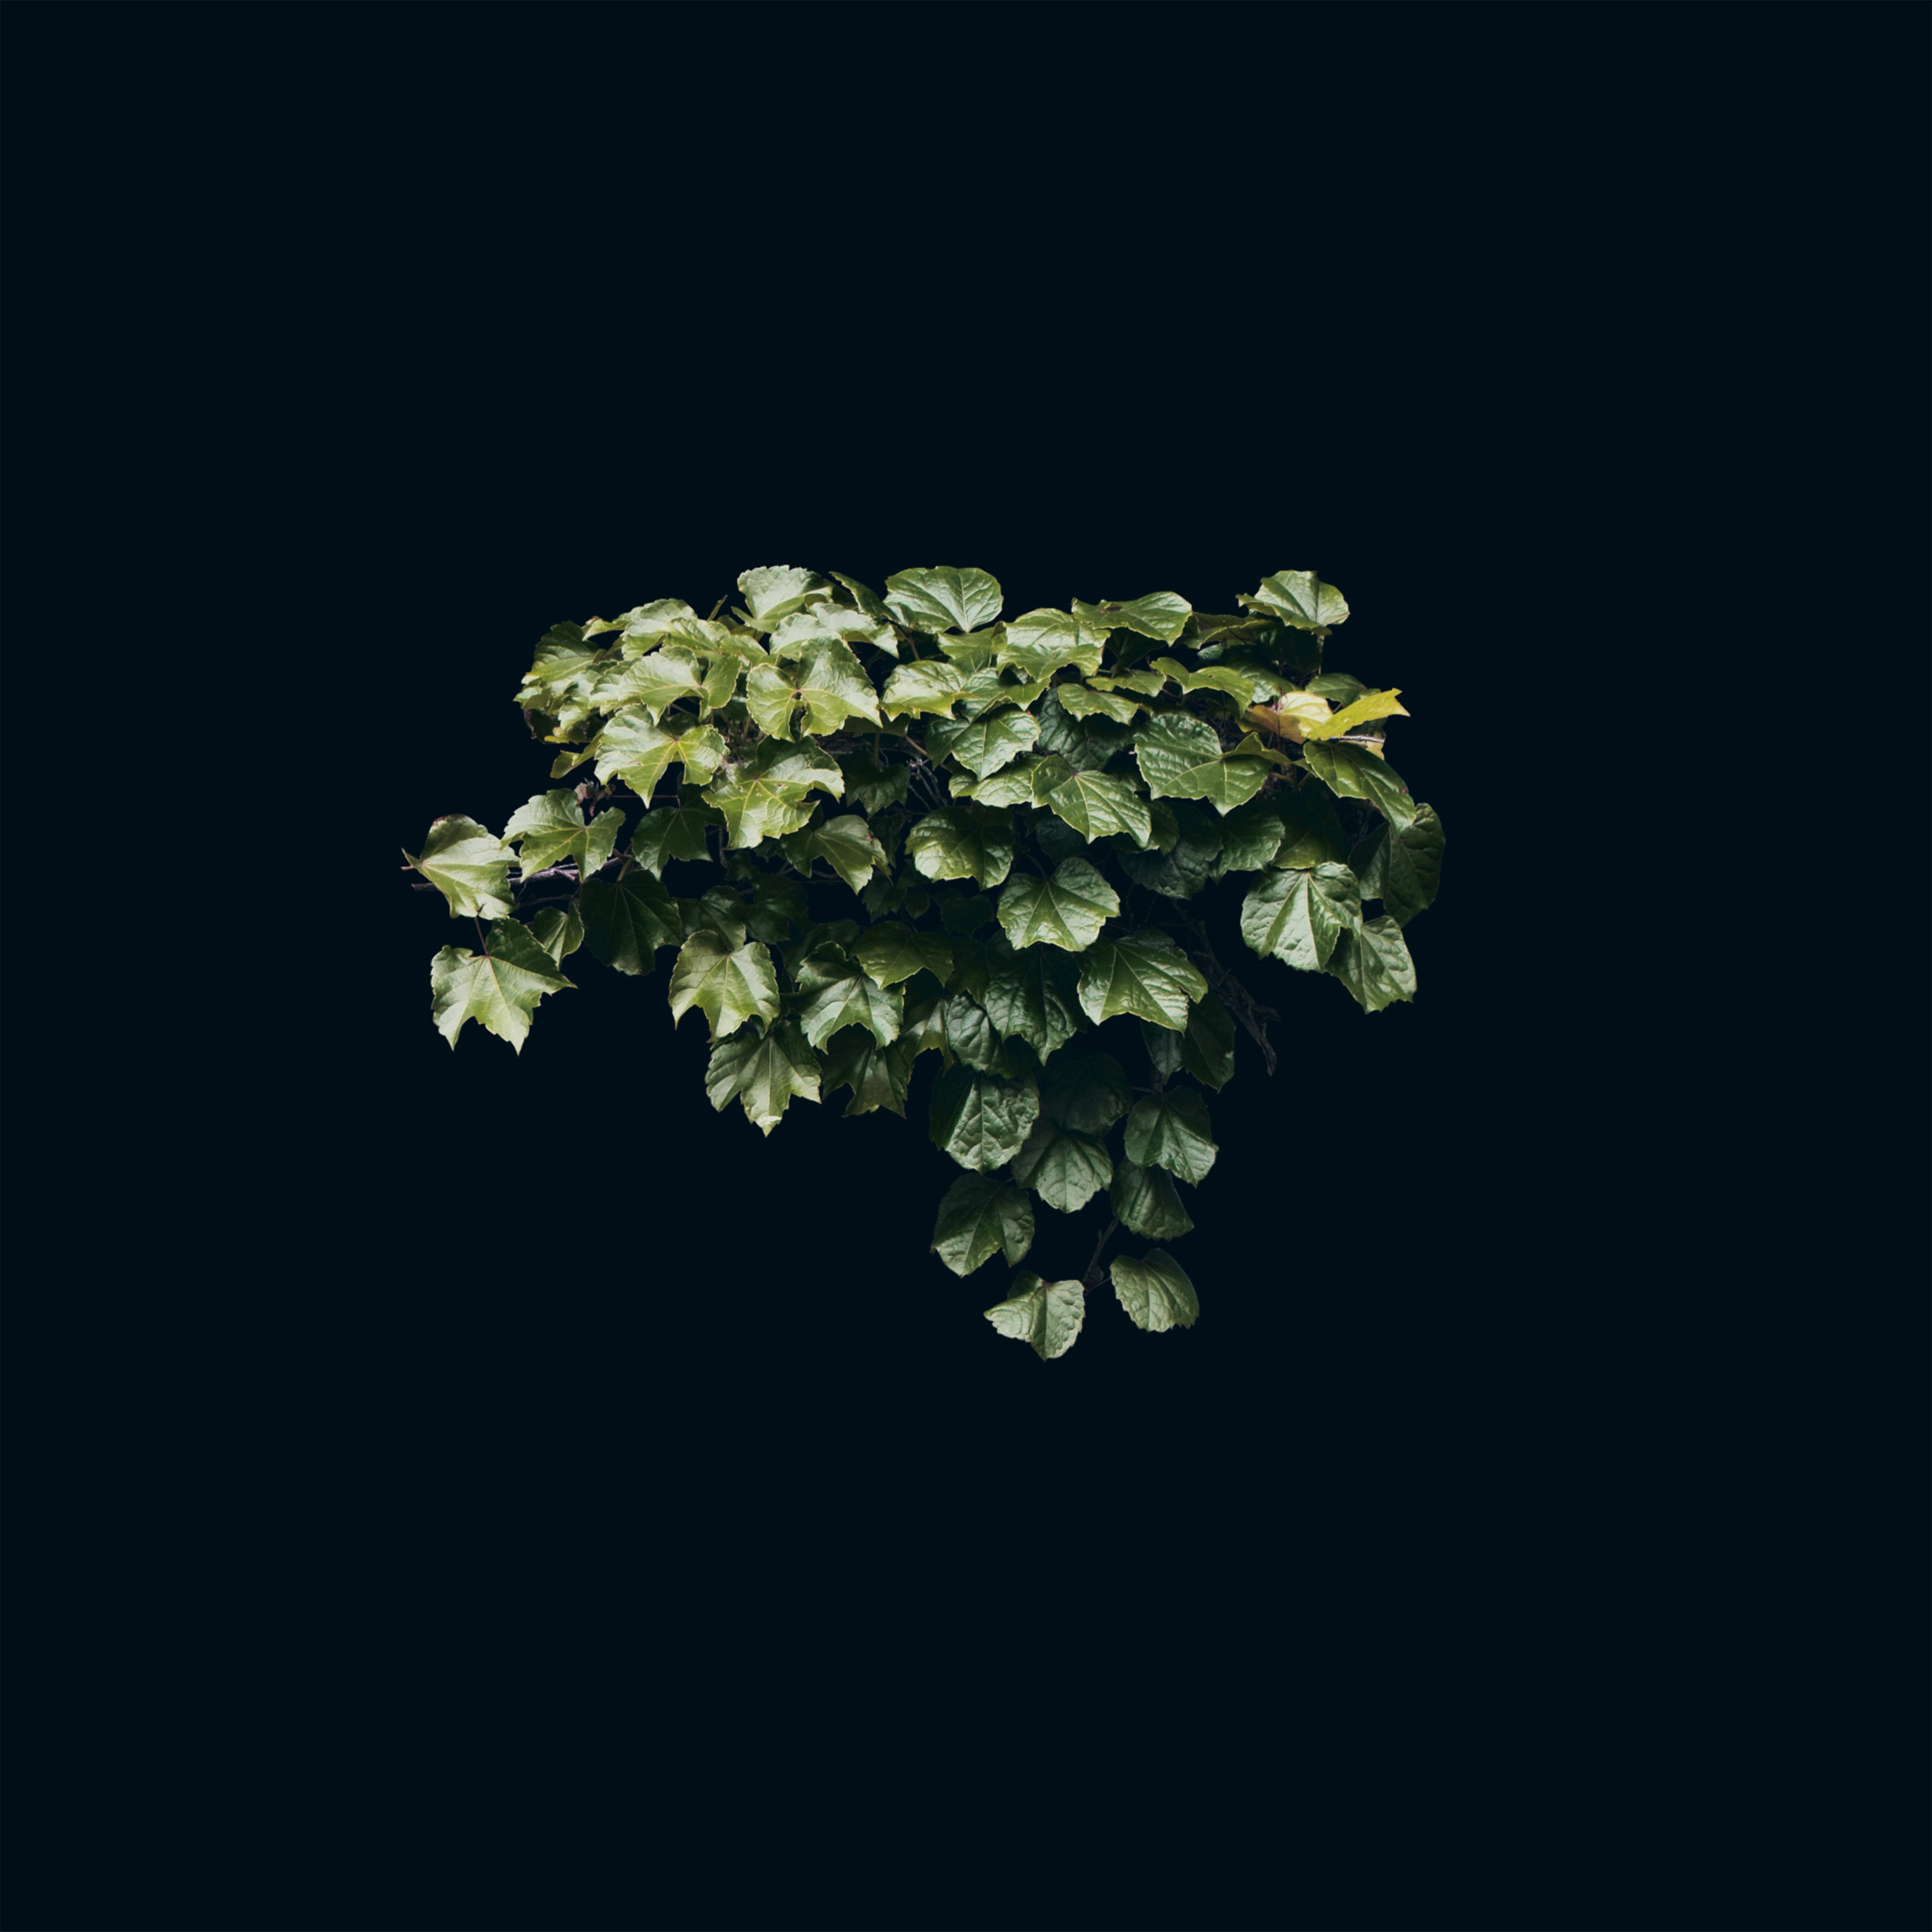 Truevine Dark Nature Green Flower Leaf Minimal Wallpaper